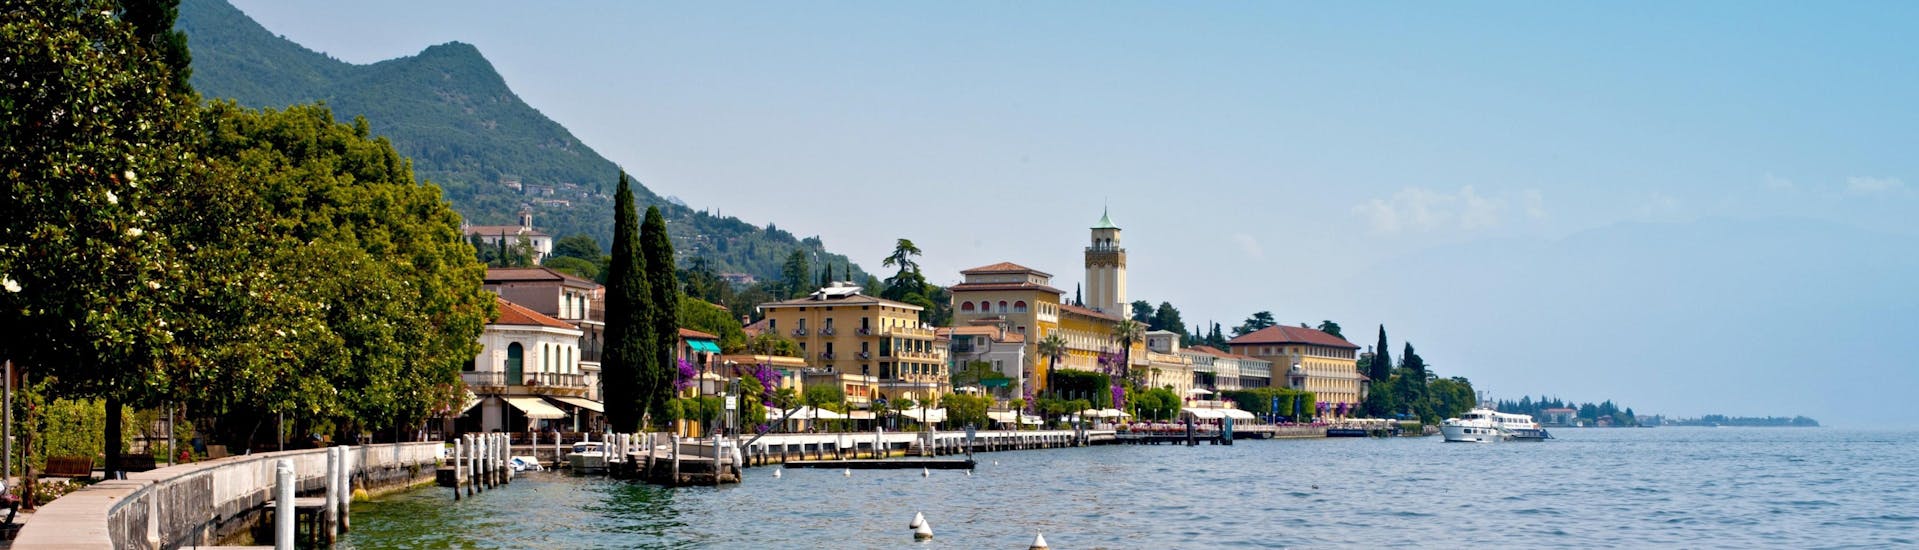 La ville de Gardone Riviera le long du lac de Garde en Italie.